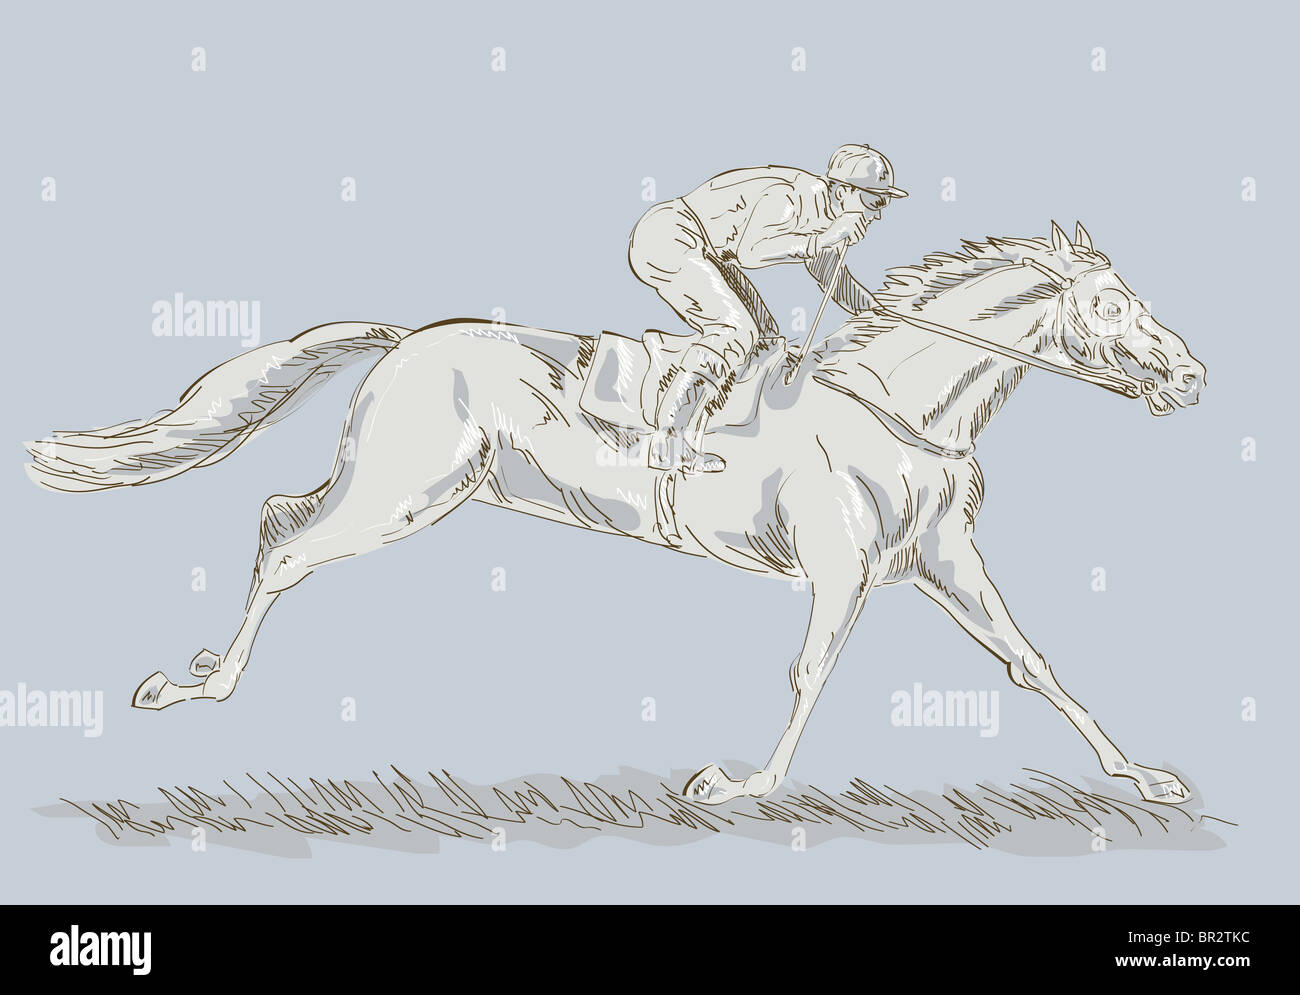 Dessiné à la main et le dessin d'un cheval et jockey dans une course gagner Banque D'Images